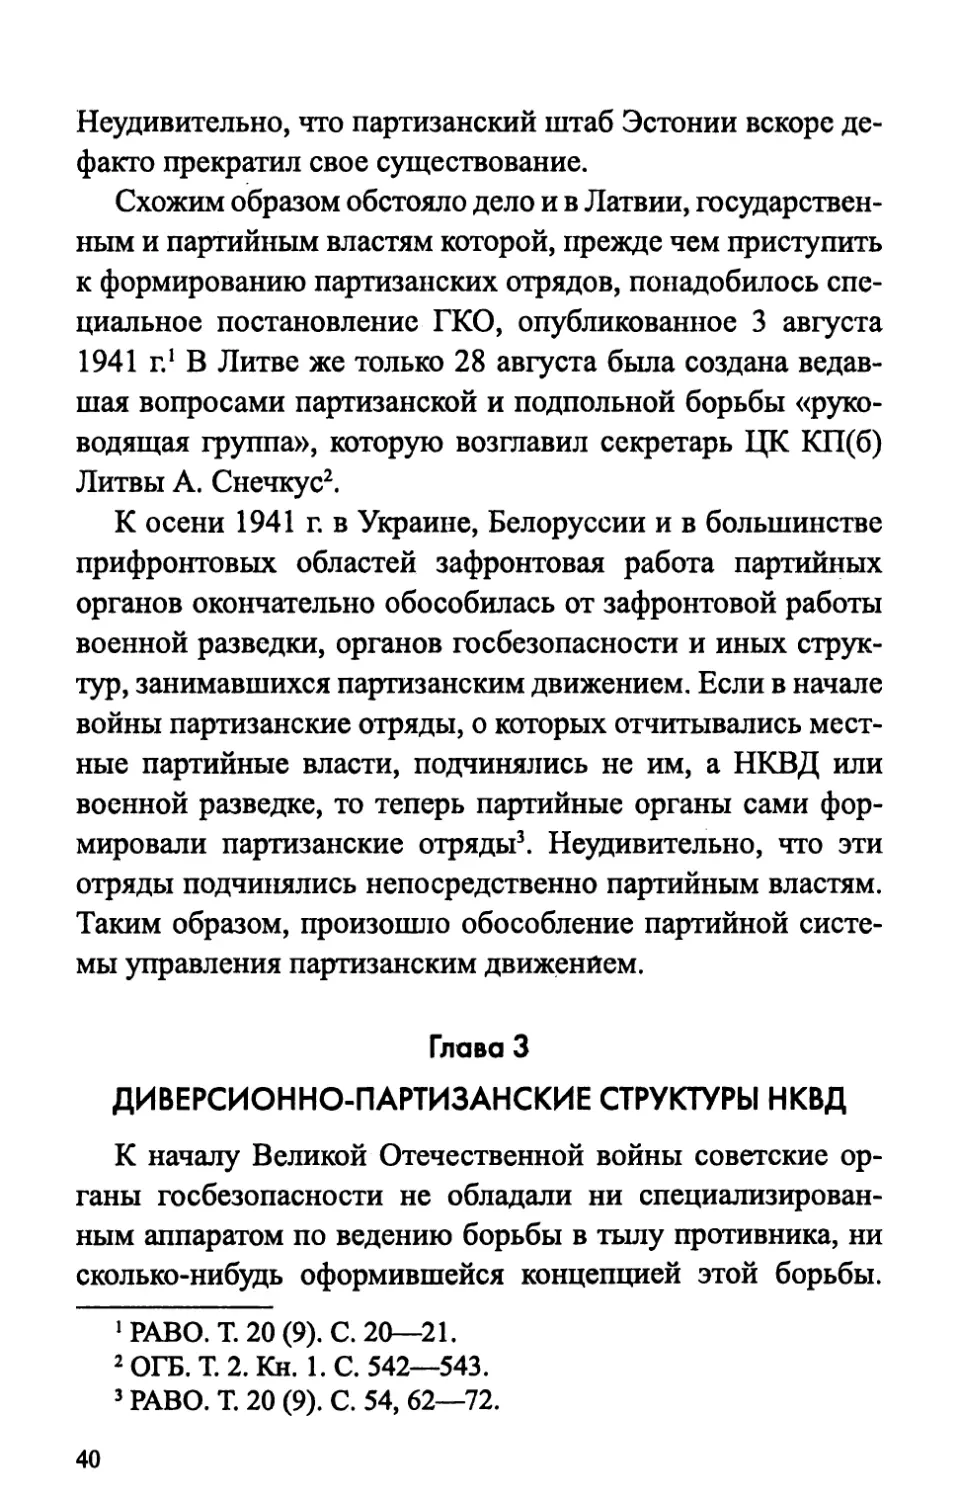 Глава 3. Диверсионно-партизанские структуры НКВД